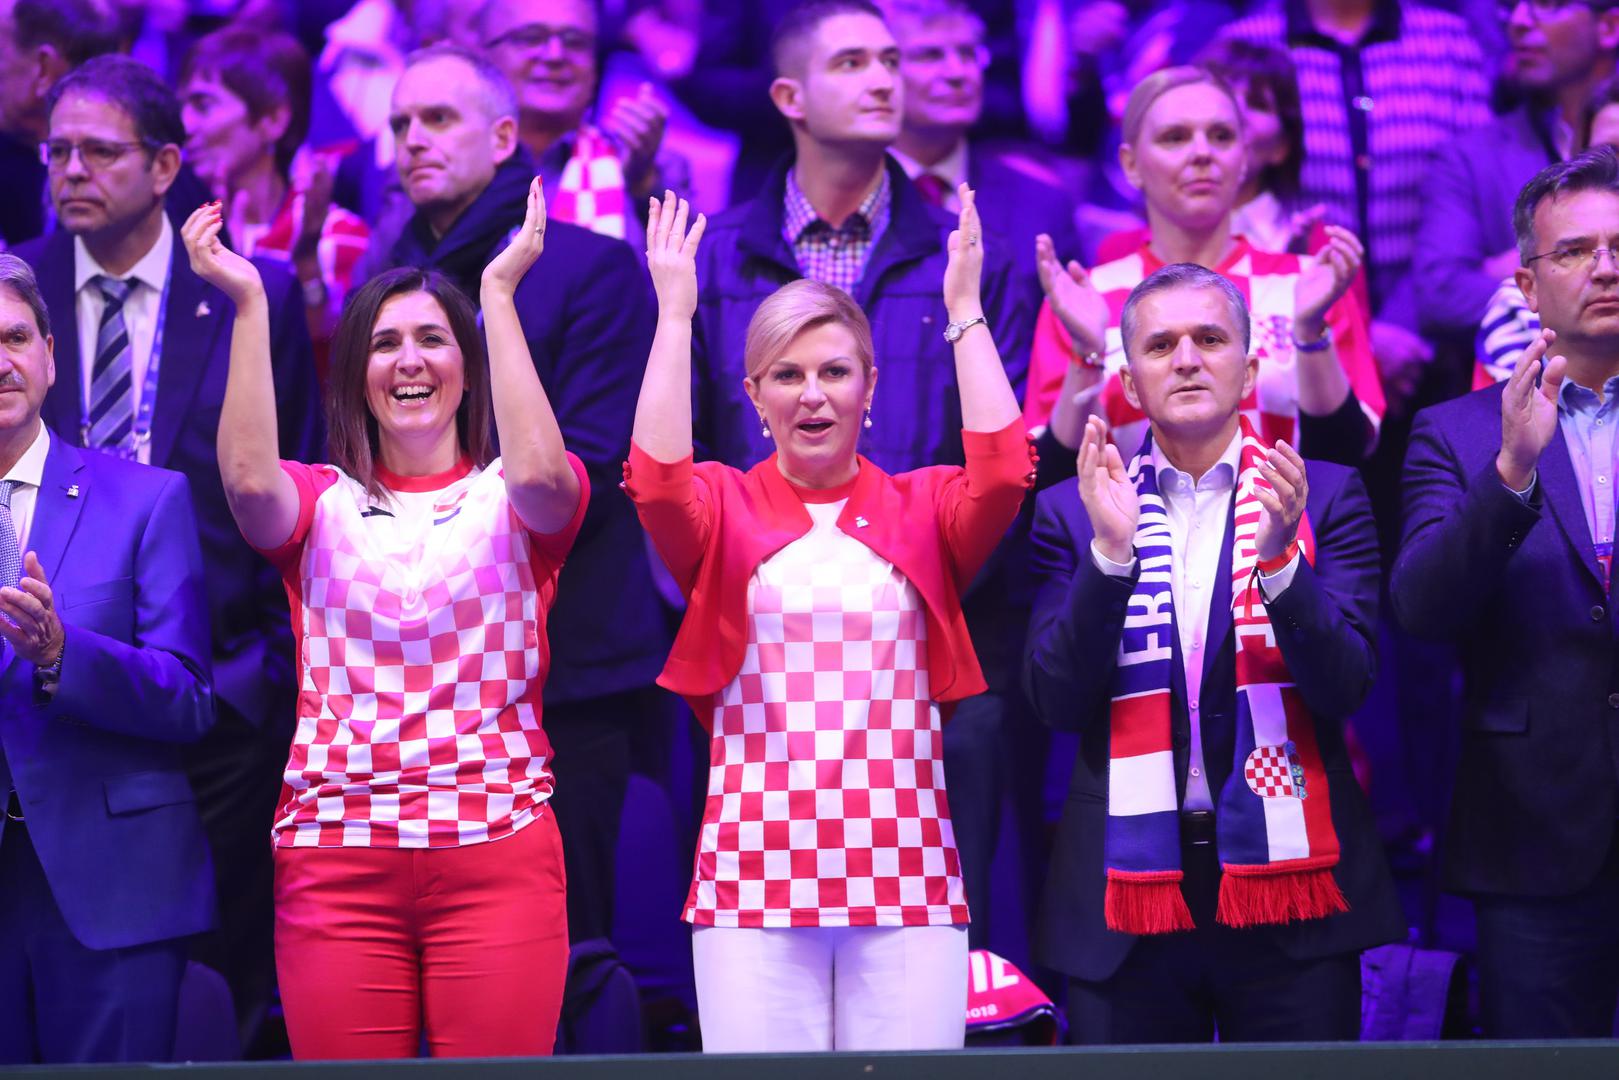 U Lilleu je danas treći posljednji dan finala Davis kupa između Hrvatske i Francuske.

